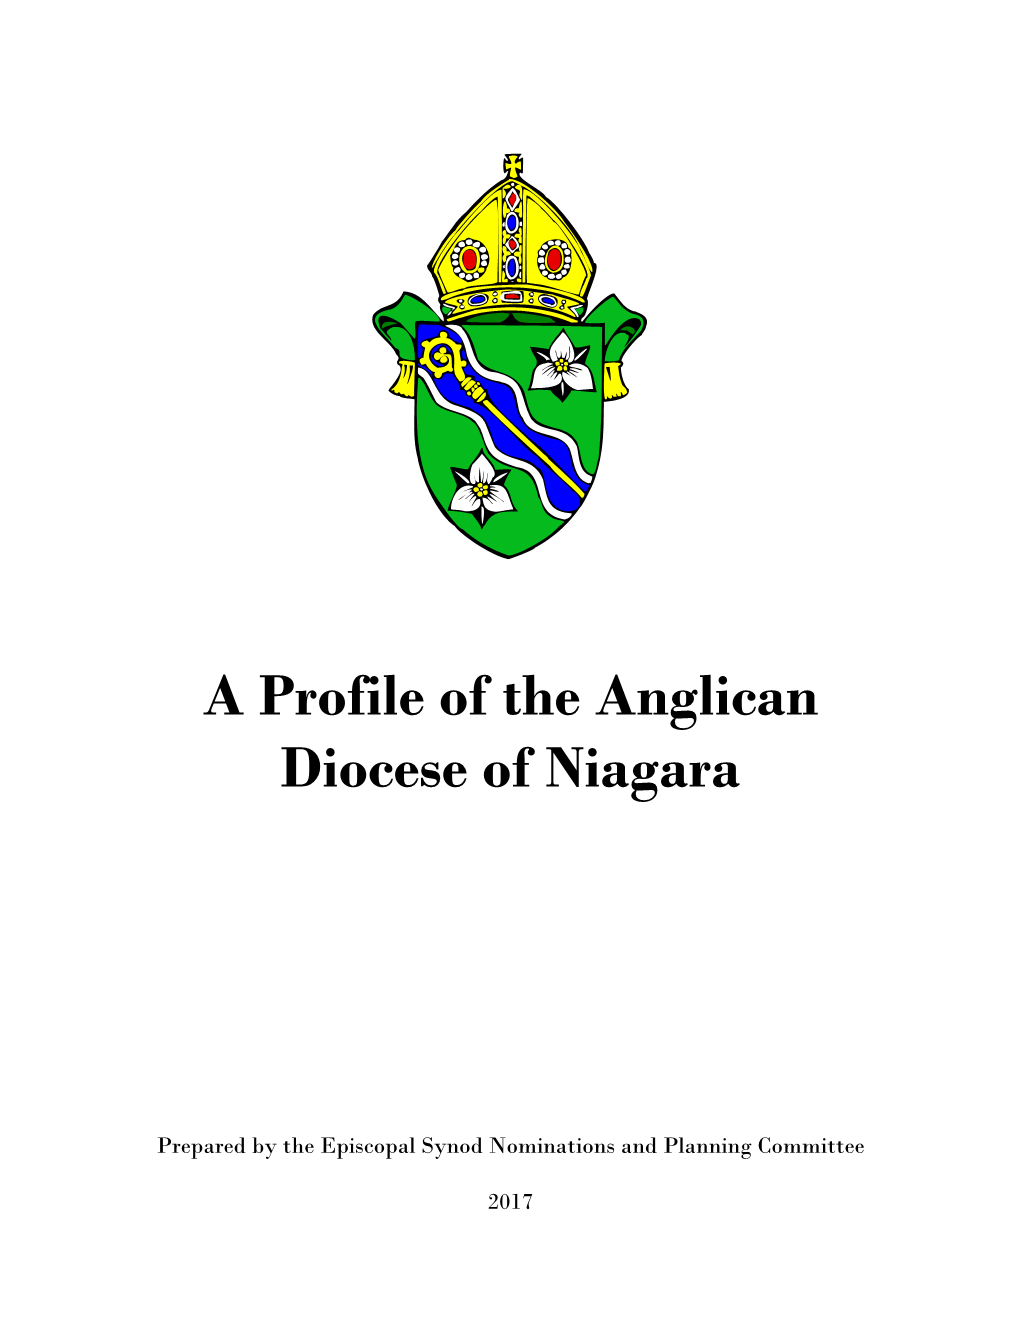 Diocesan Profile